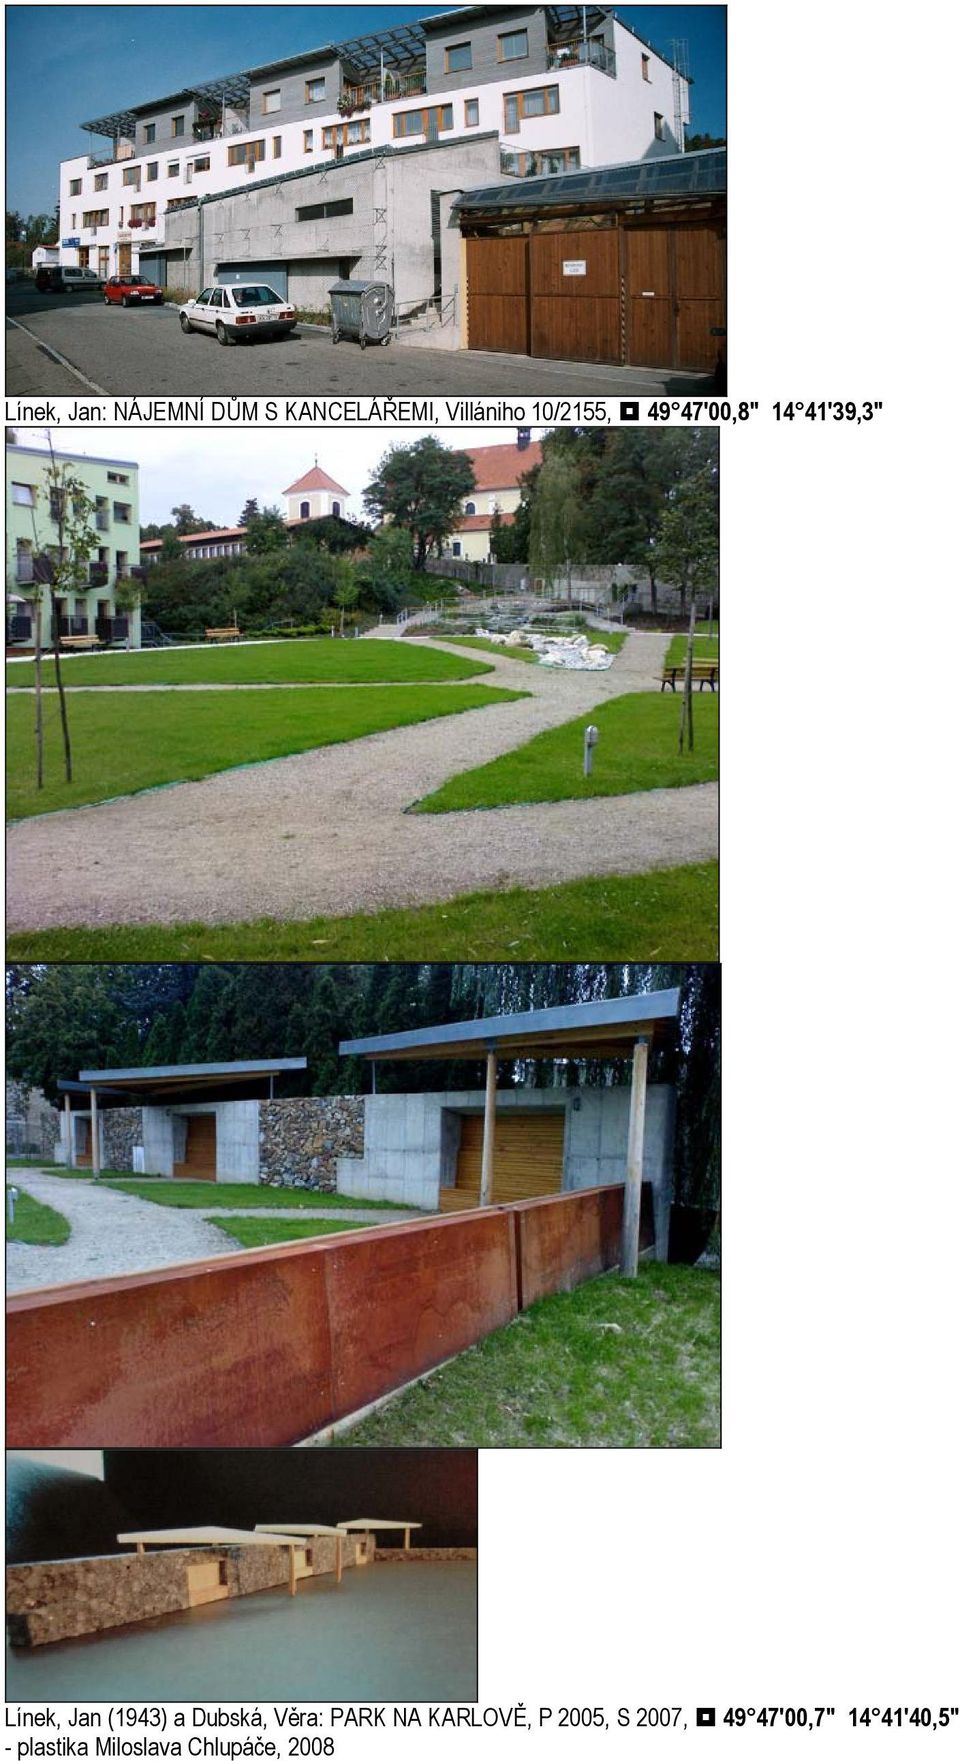 a Dubská, Věra: PARK NA KARLOVĚ, P 2005, S 2007, 49